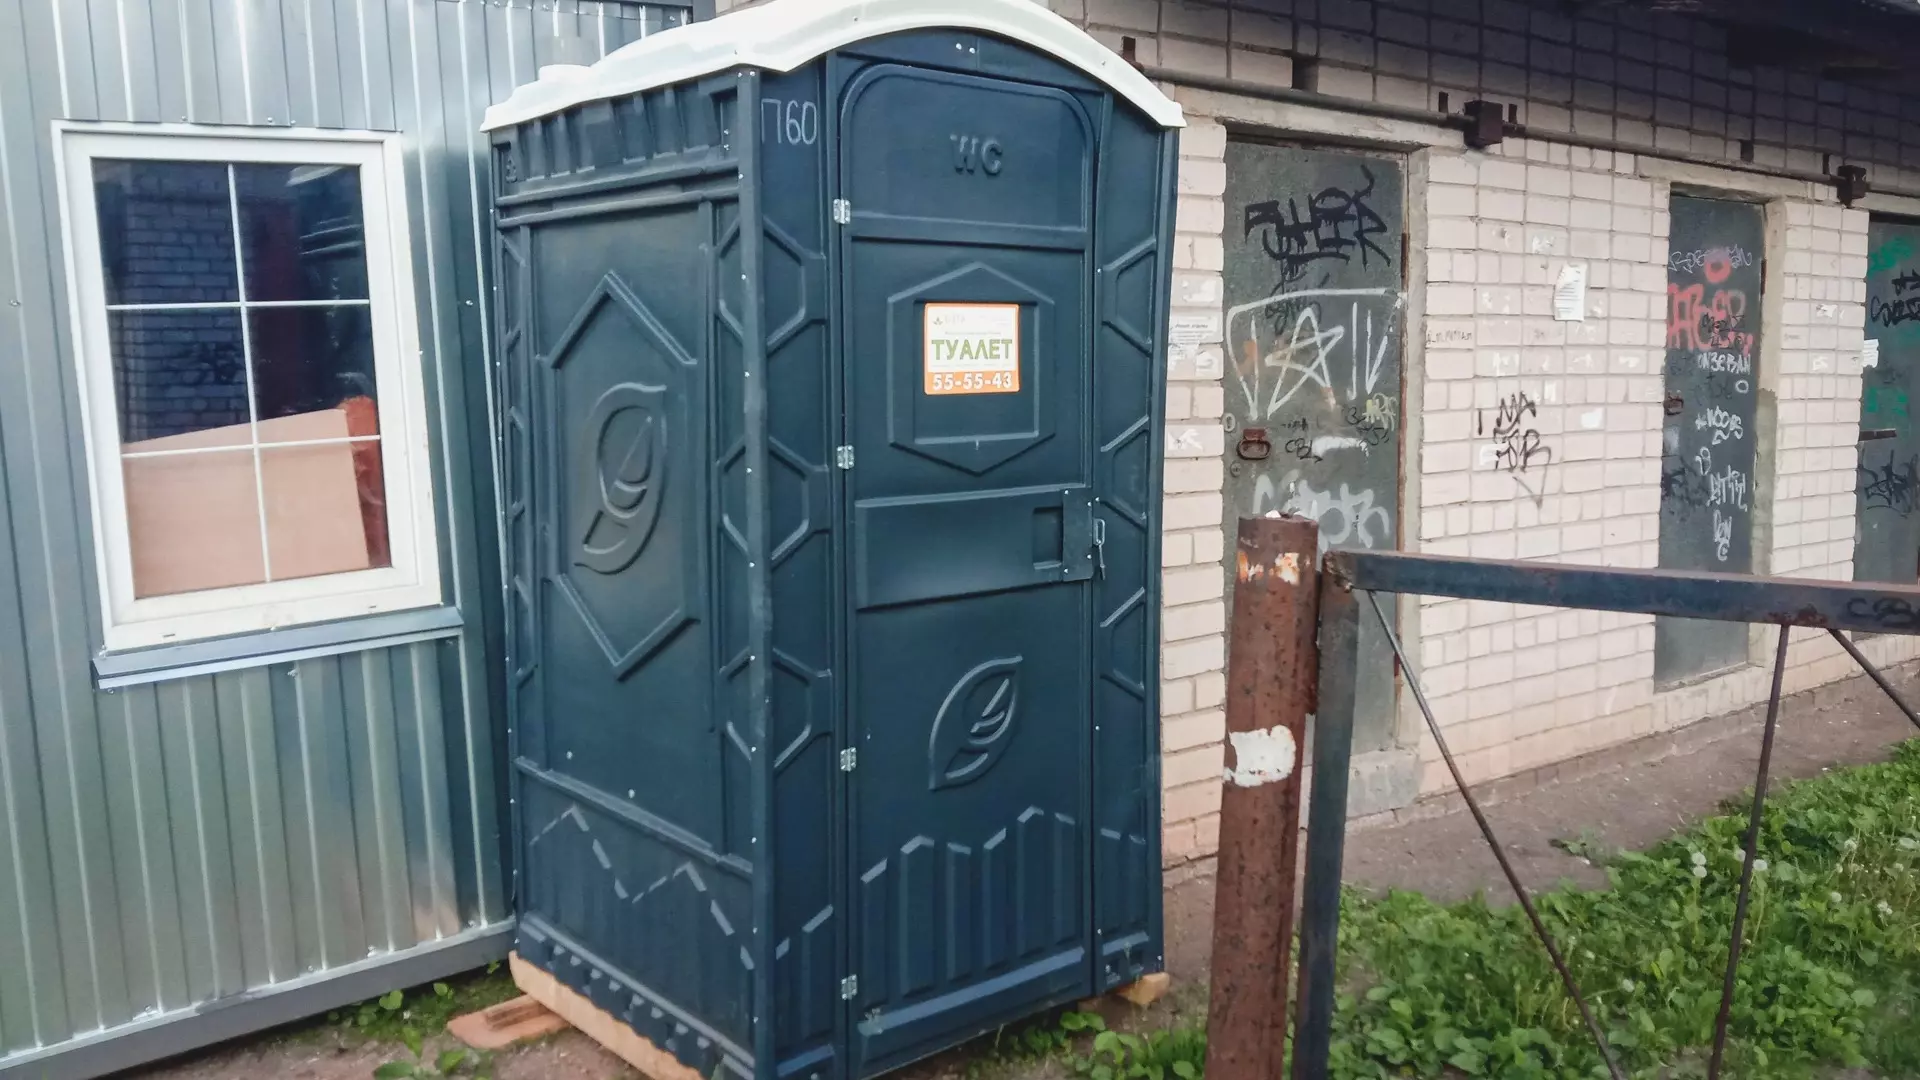 Бесплатные туалеты построят в Кисловодске за счет туристов